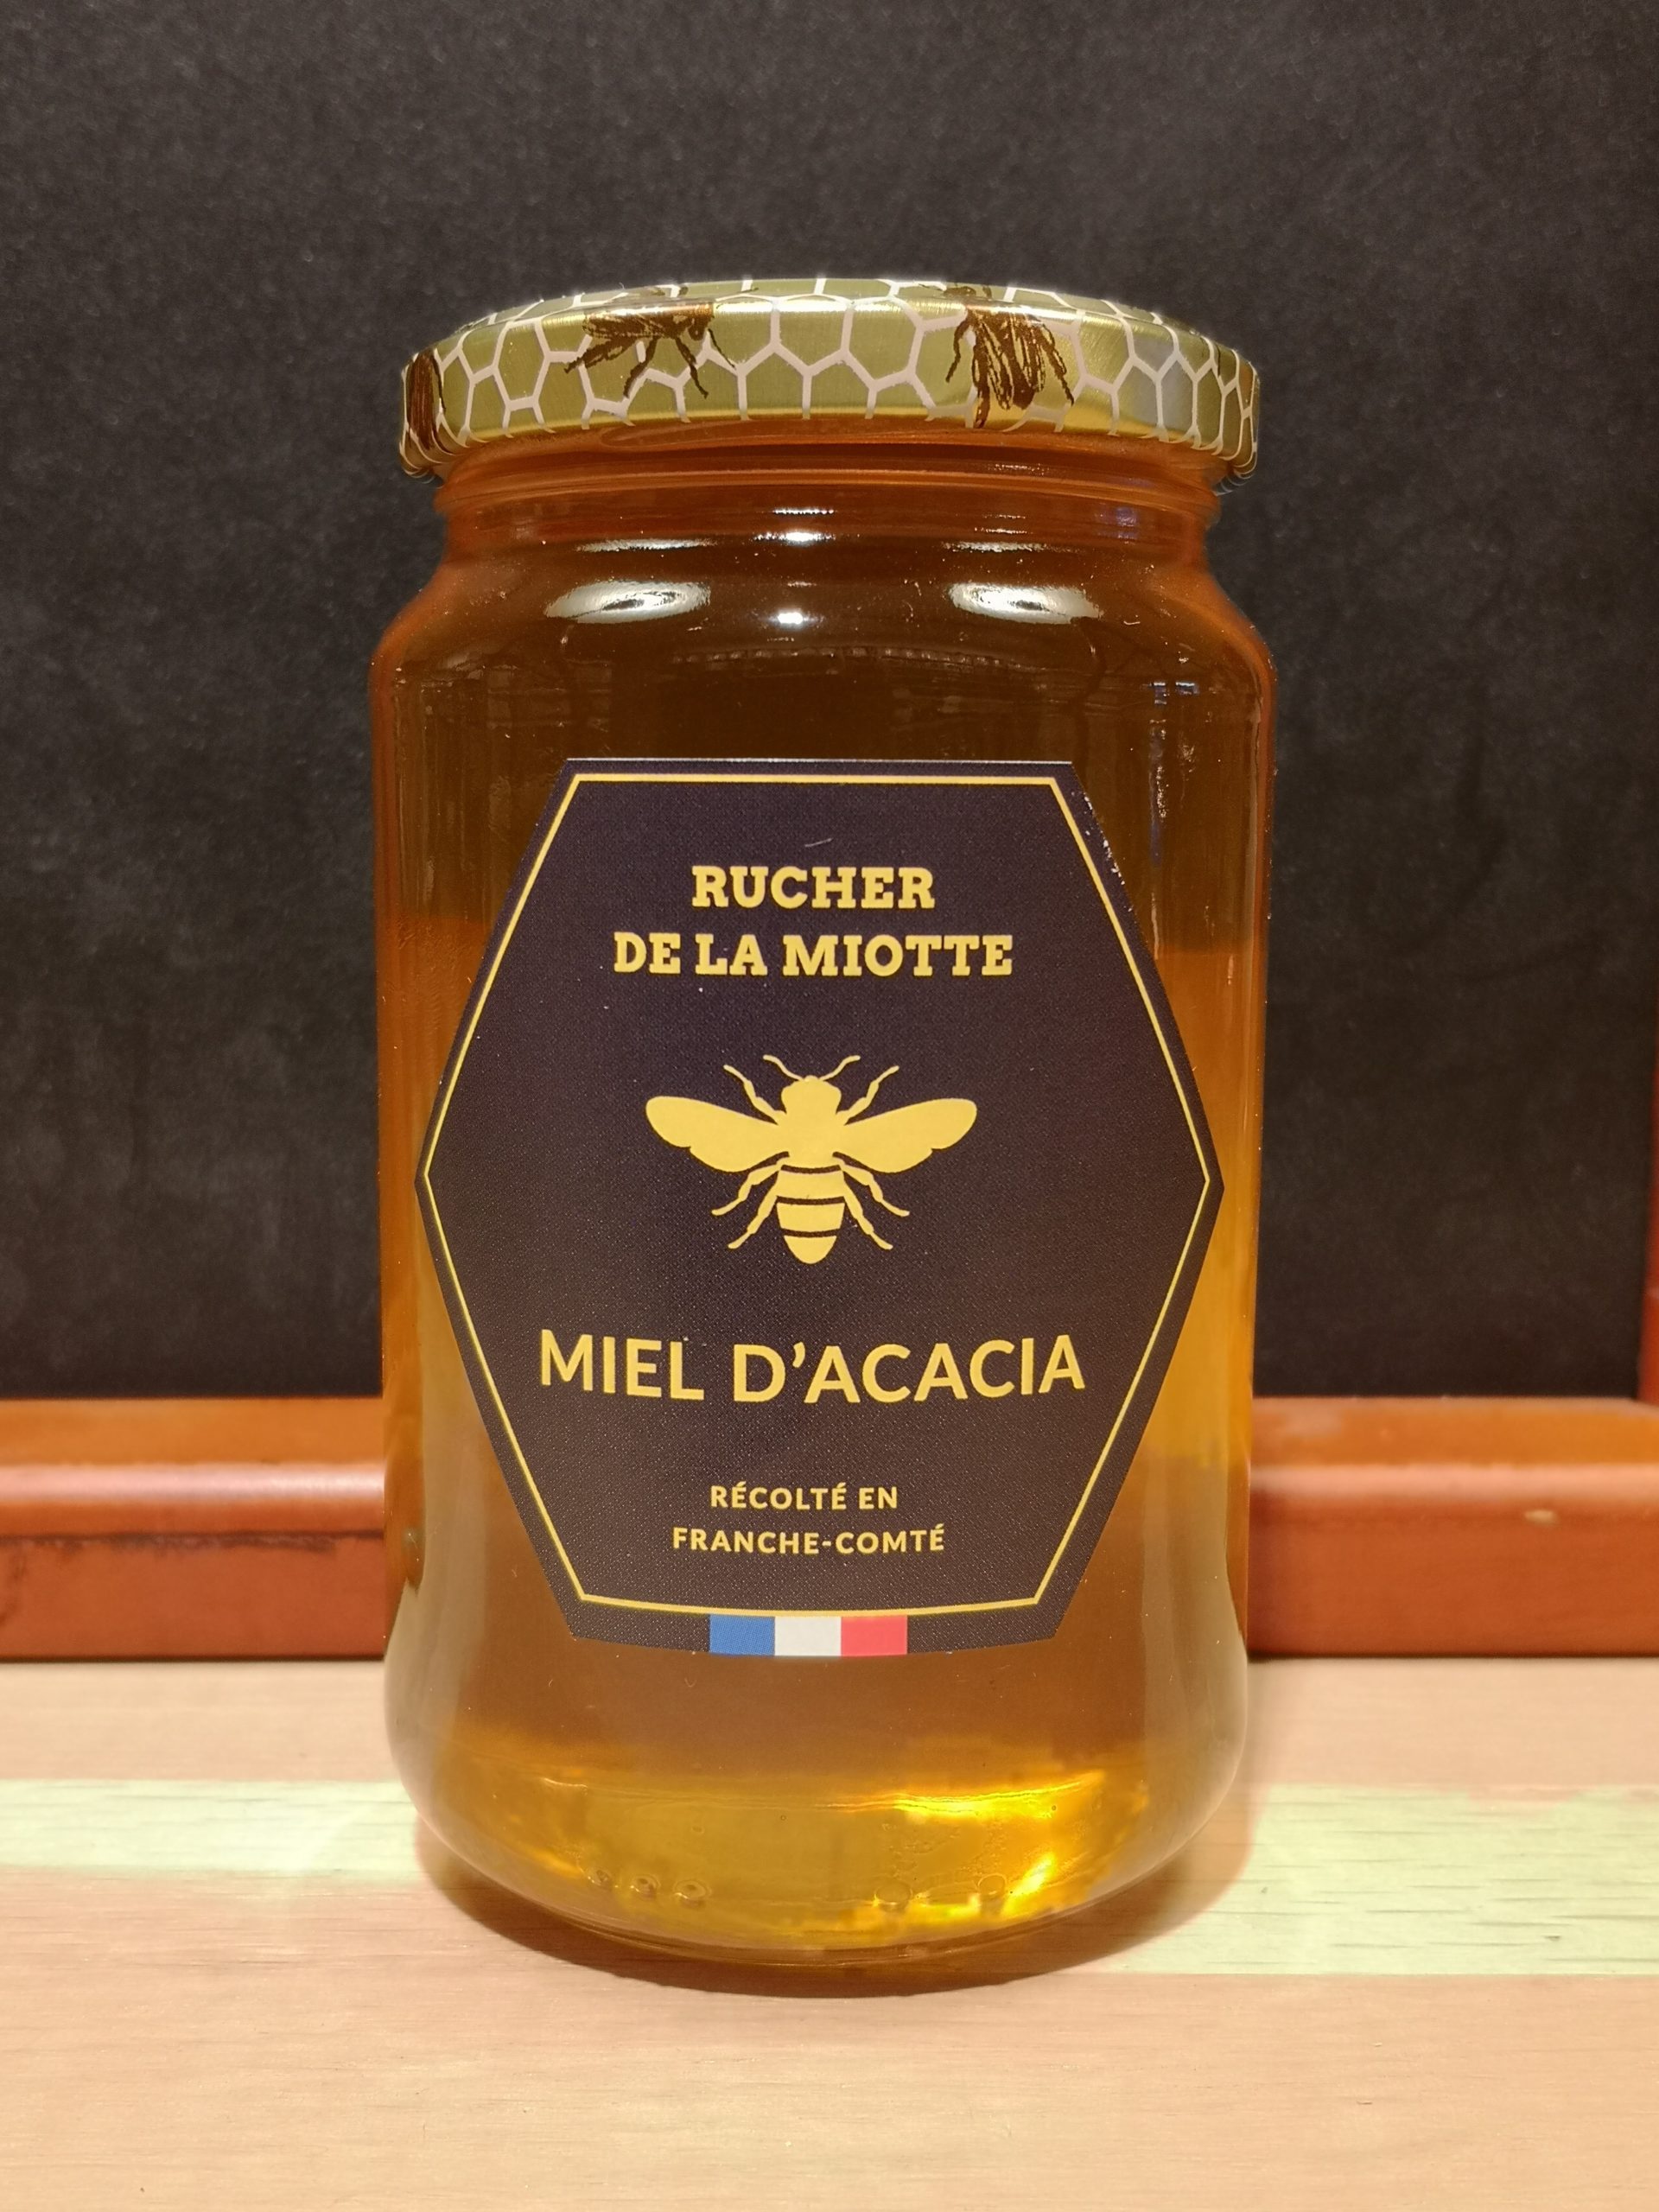 Miel d'acacia - Rucher de la miotte